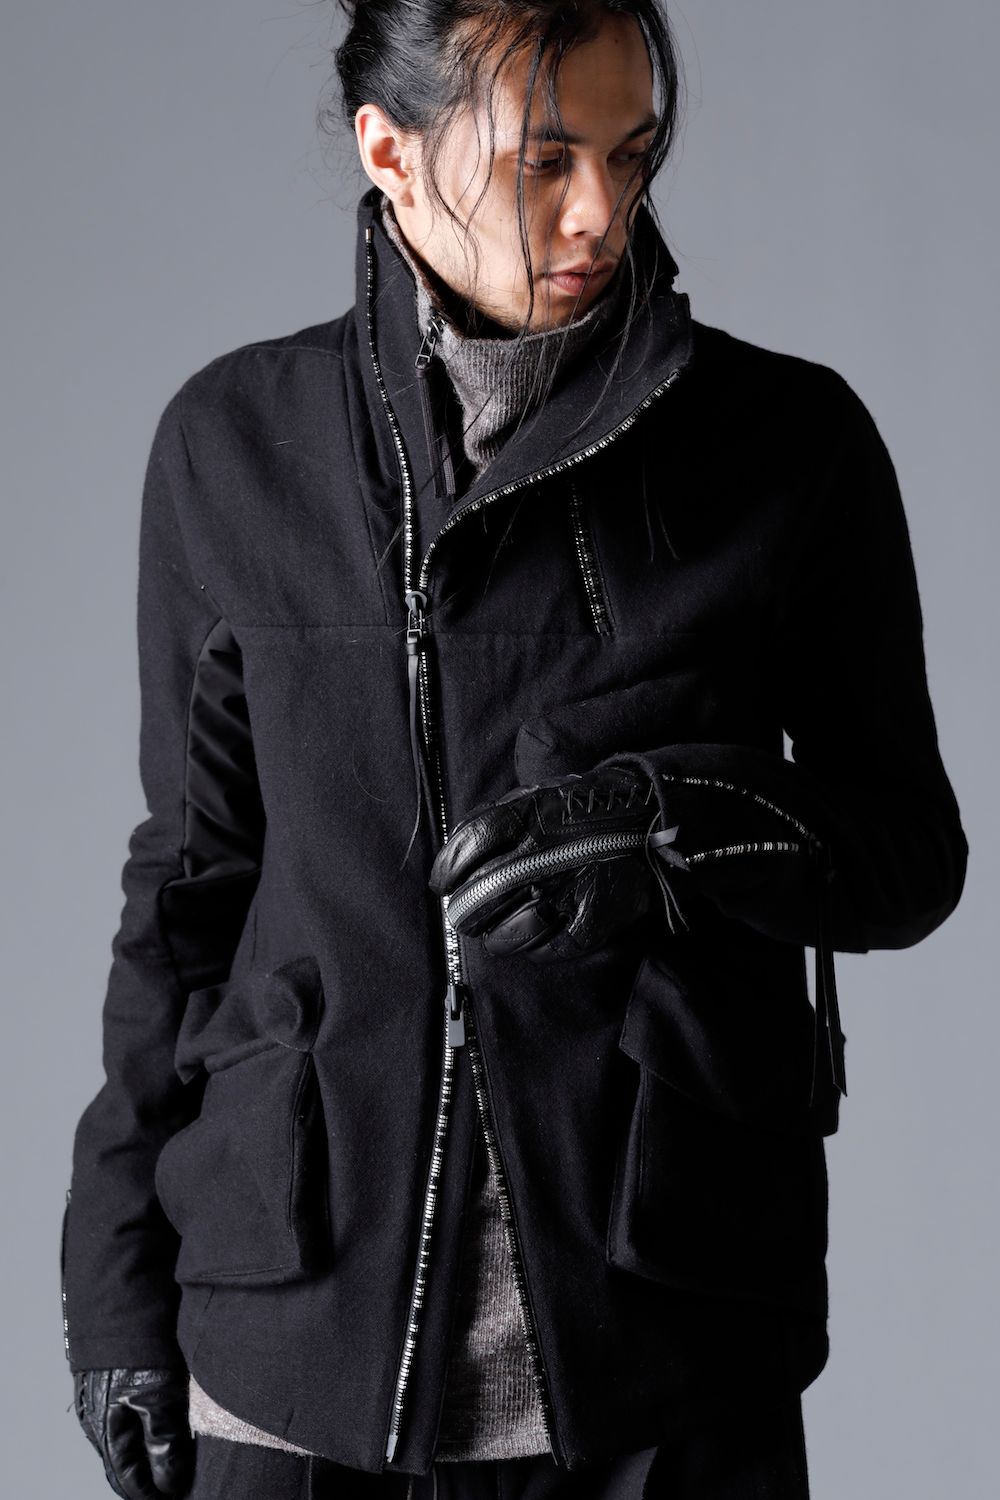 Wool Gauze × Cotton Needle Punch High Neck Jacket"Black"/ウールガーゼ×コットンニードルパンチハイネックジャケット"ブラック"